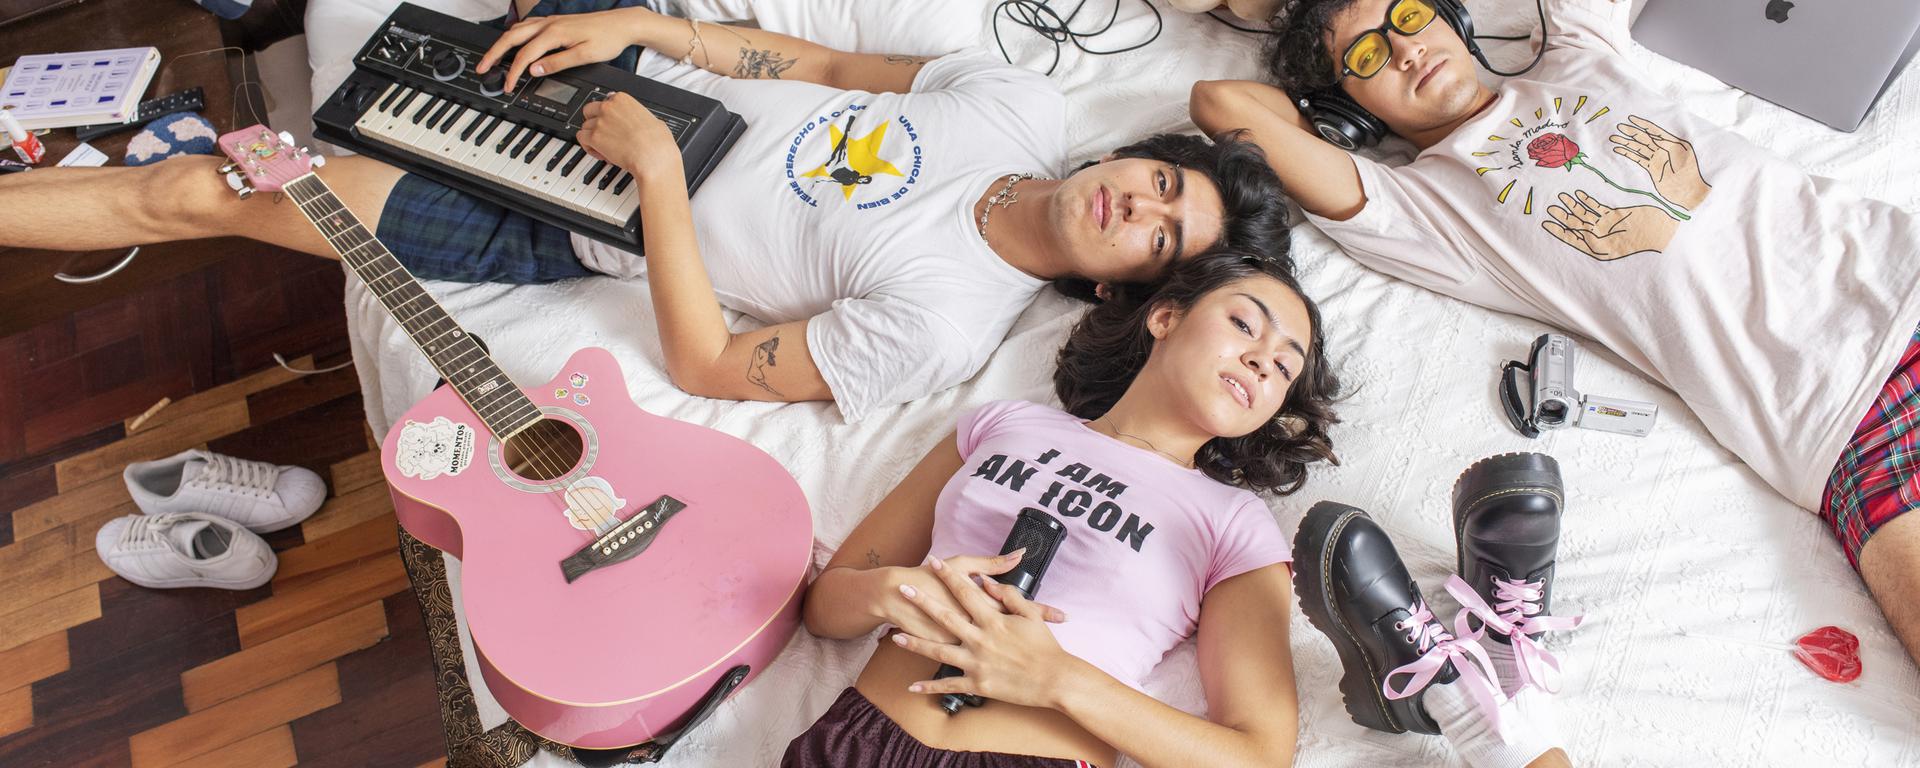 Discos hechos en casa: la revolución sonora de una nueva generación de músicos peruanos